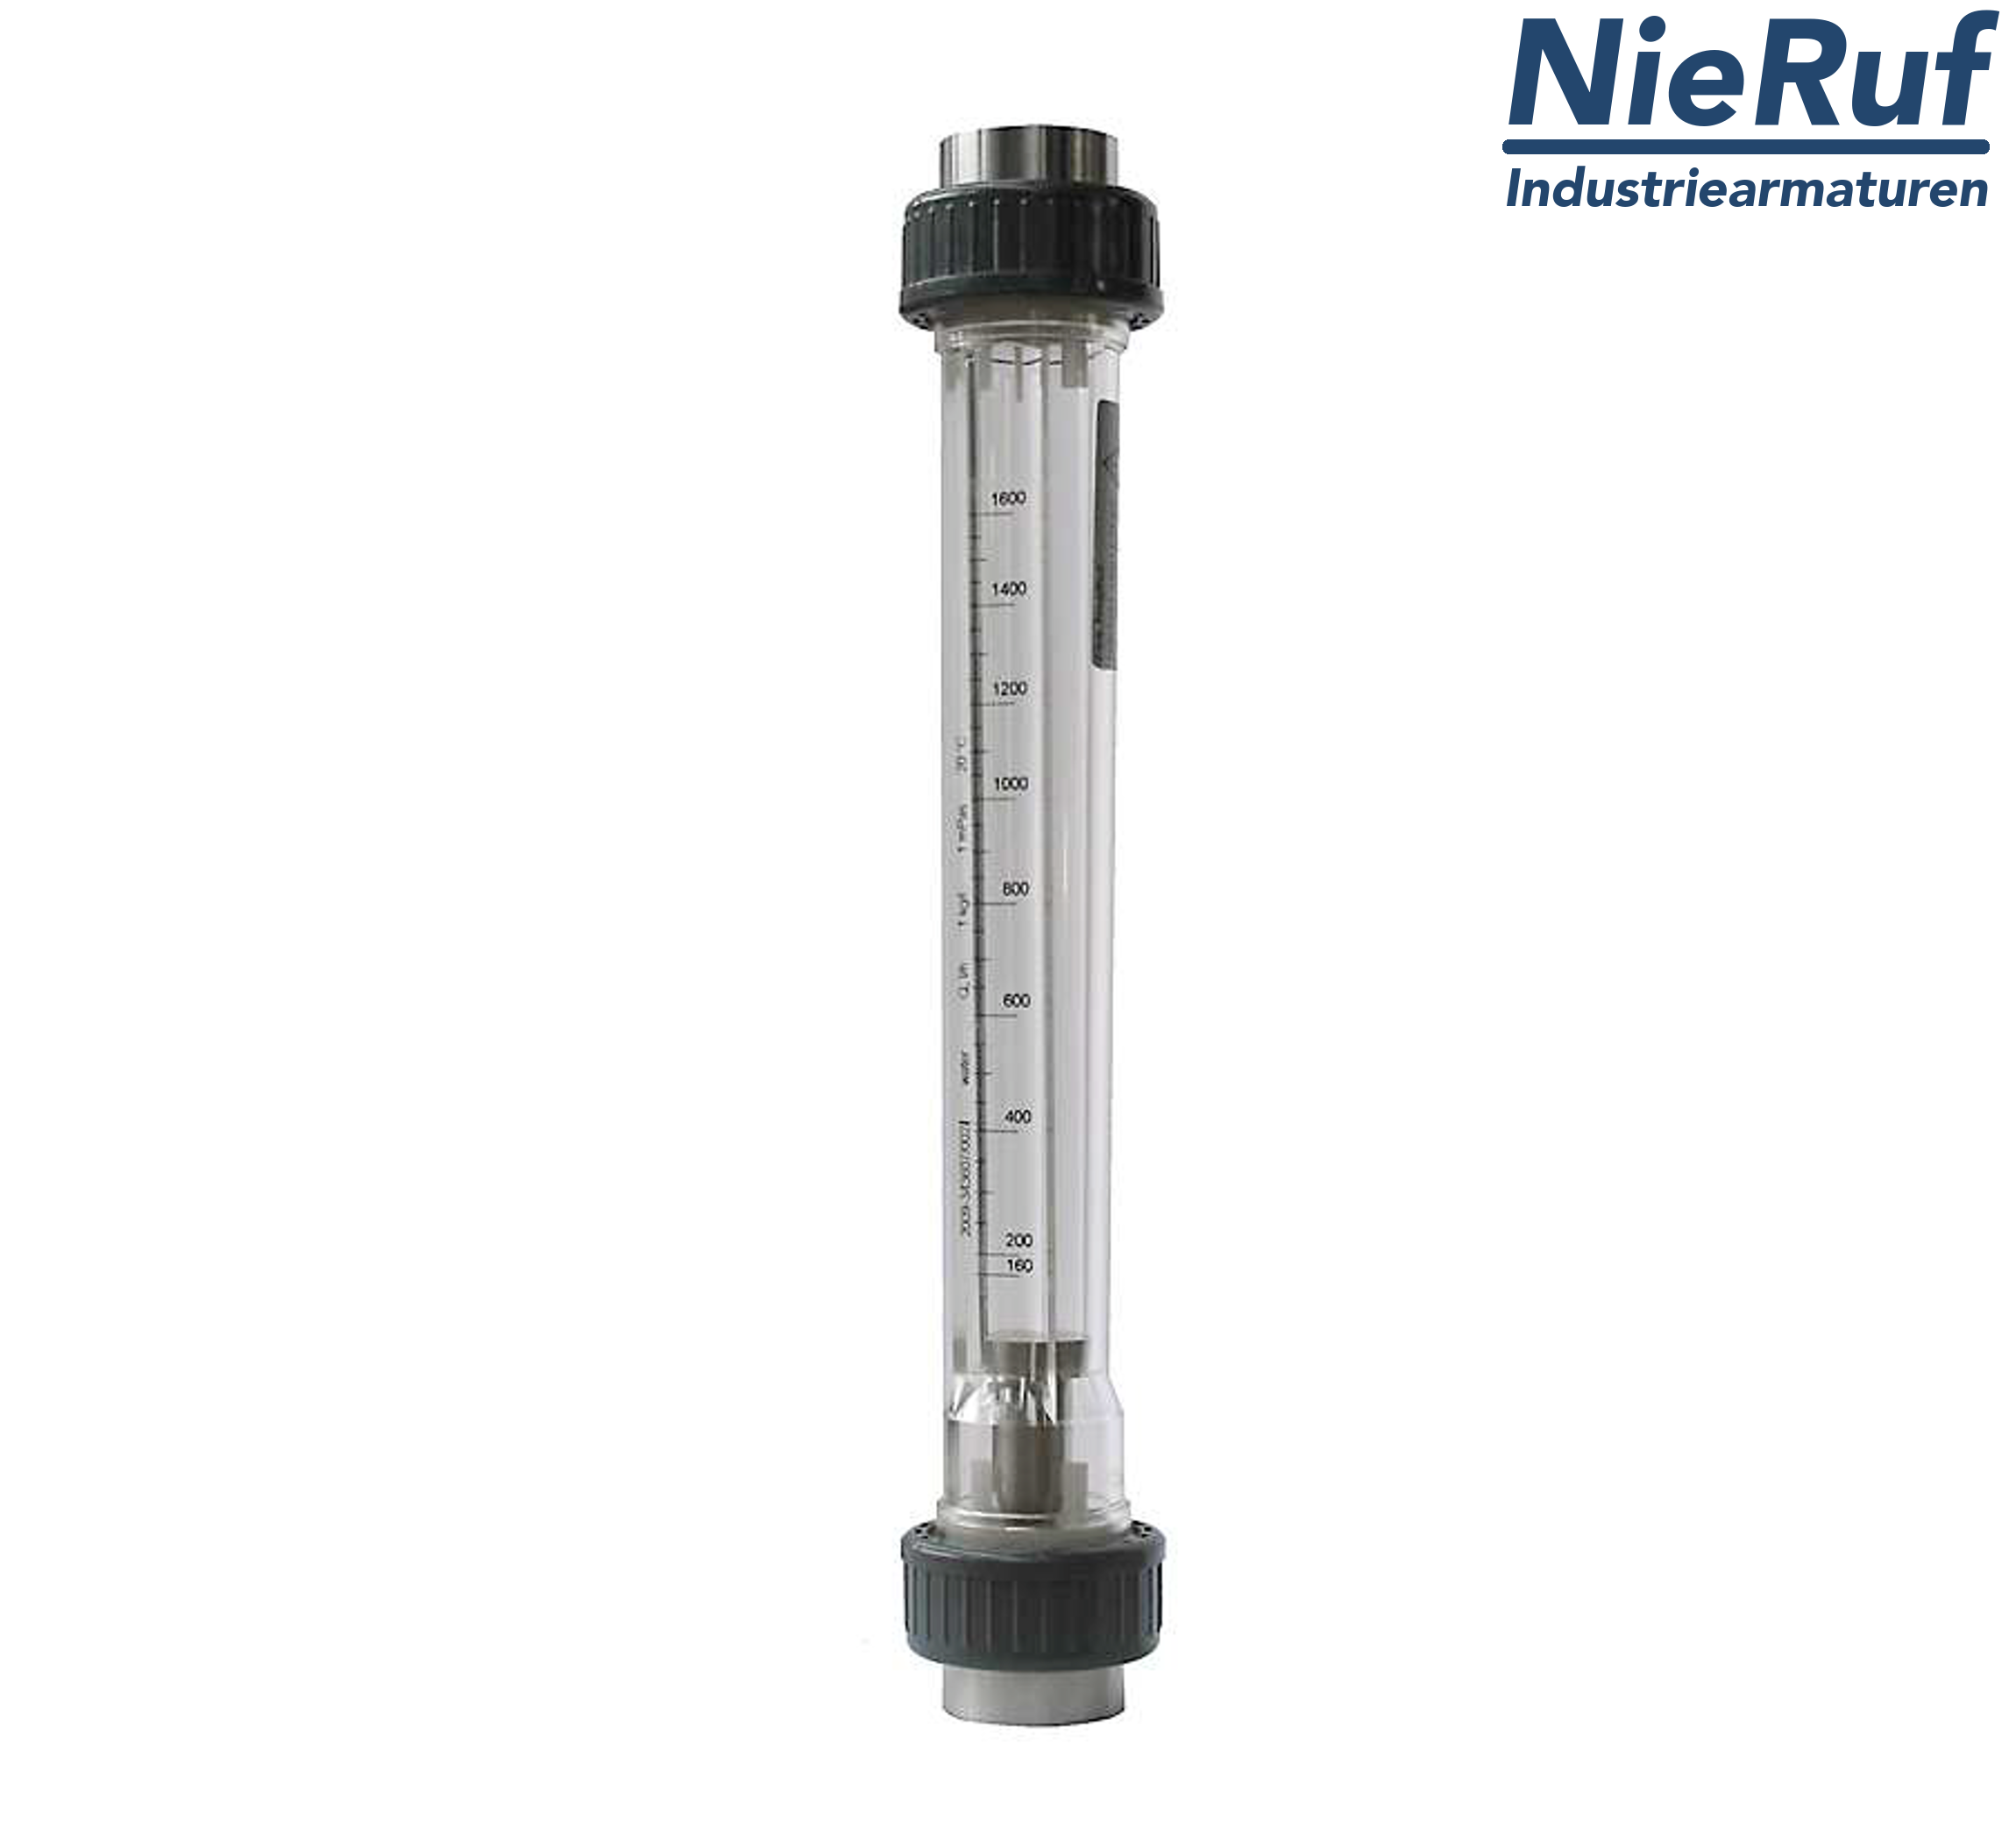 Variable area flowmeter 1 1/4" Inch NPT 143000.0 - 430000 l/h air NBR